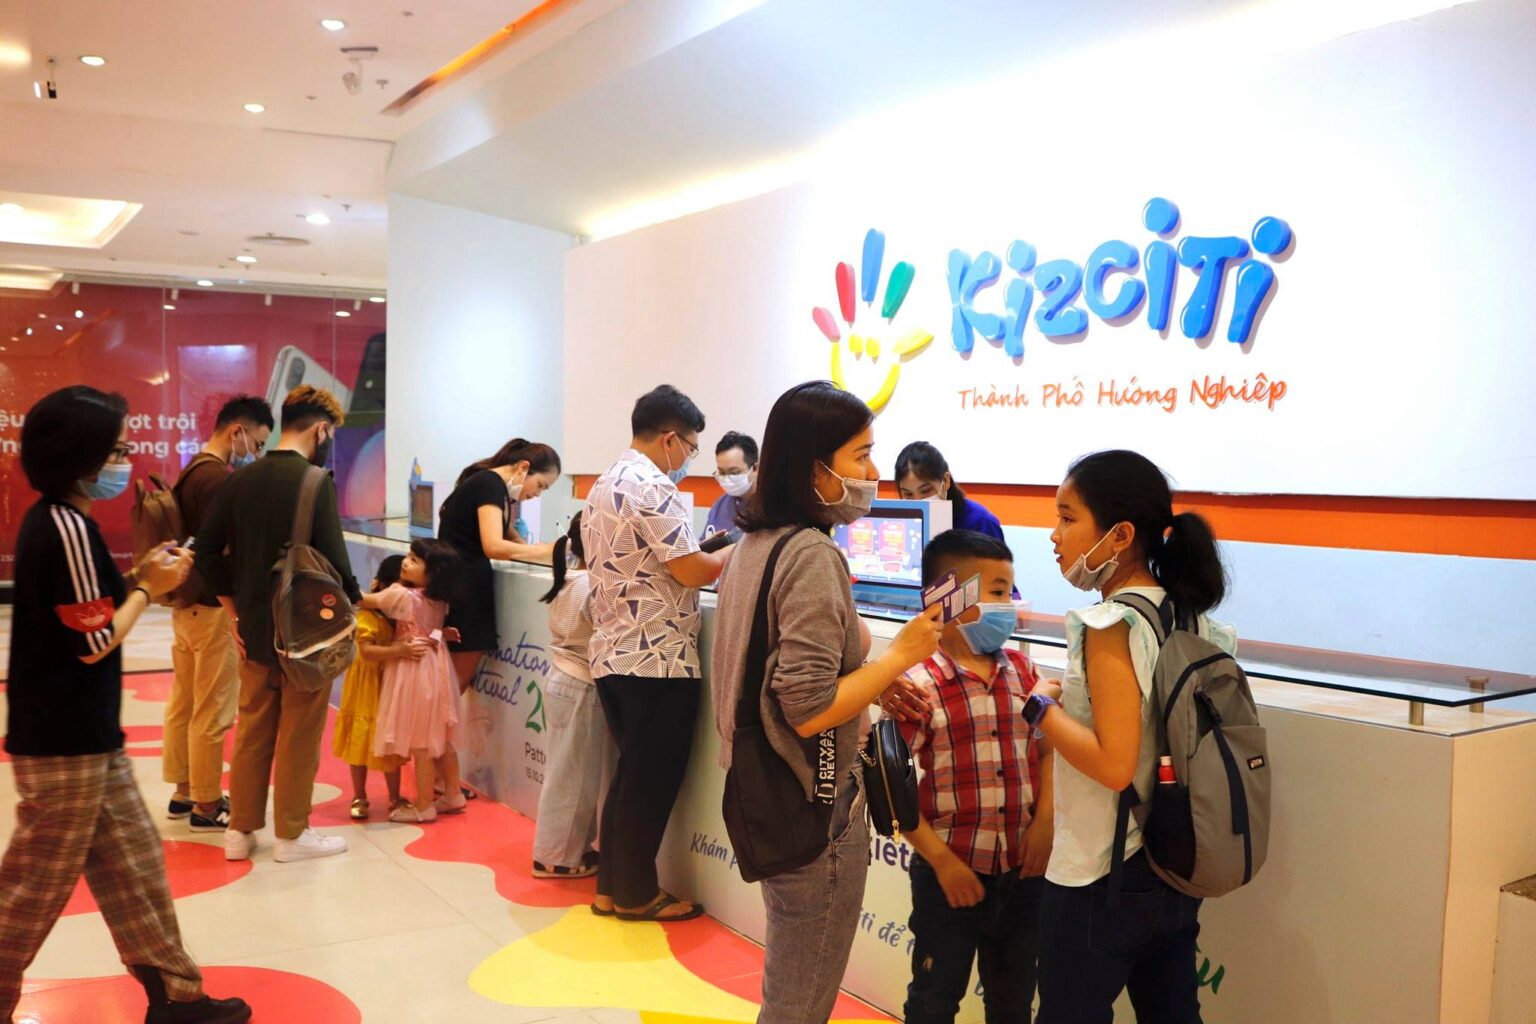 "Thành phố hướng nghiệp Kizciti" Hà Nội nằm trong Vincom Mega Mall. Ảnh:  Kizciti “Thành Phố Hướng Nghiệp”.